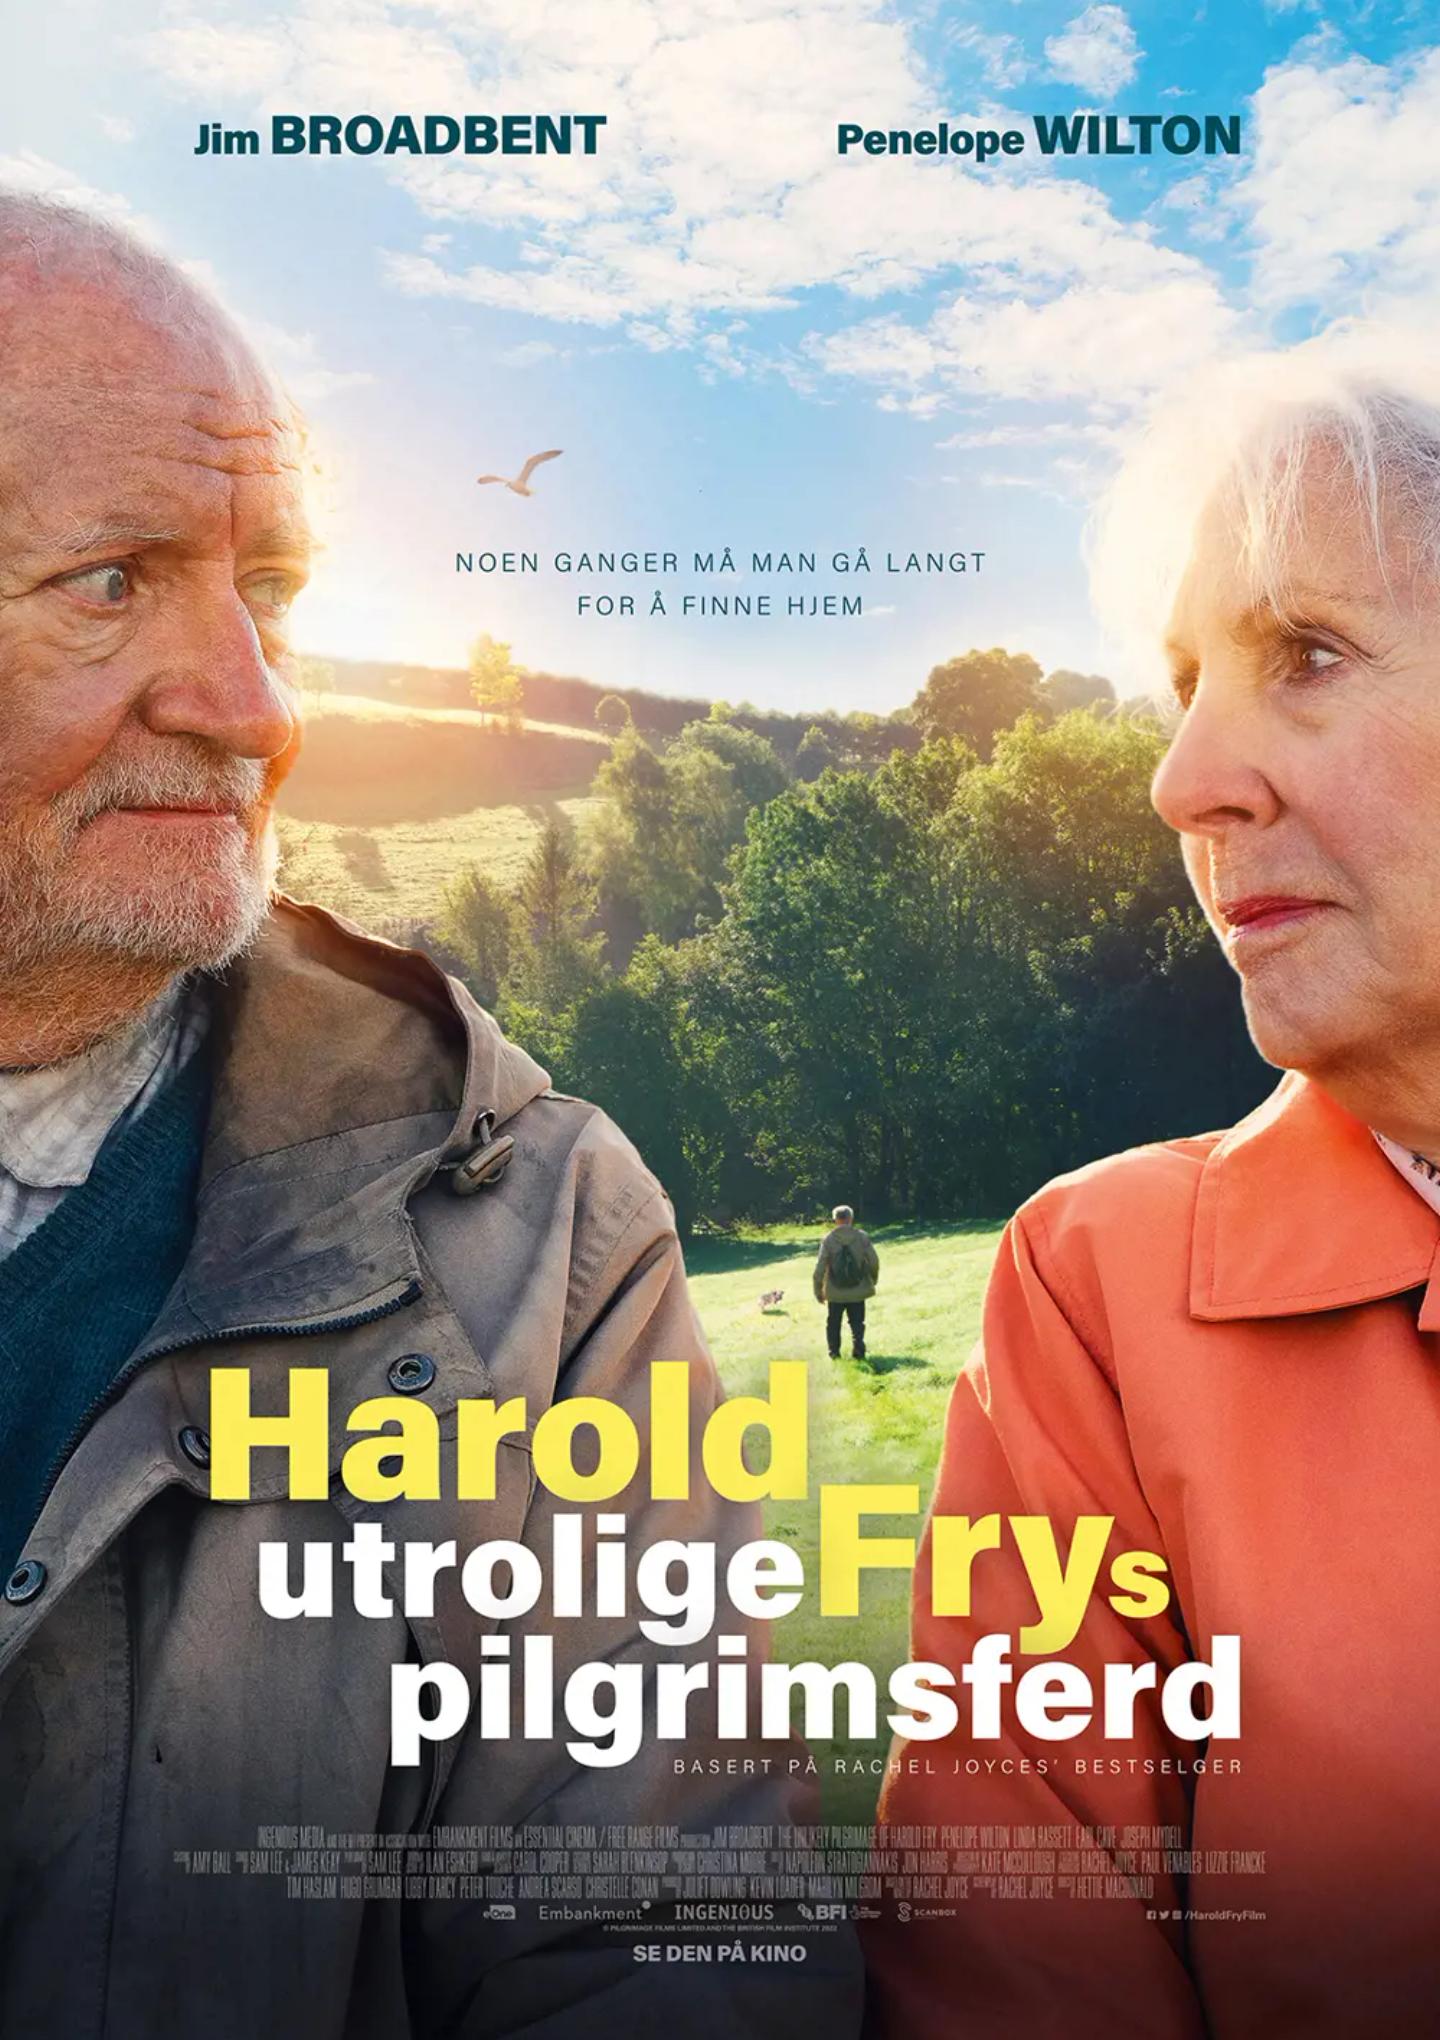 Plakat for 'Harold Frys utrolige pilgrimsferd '